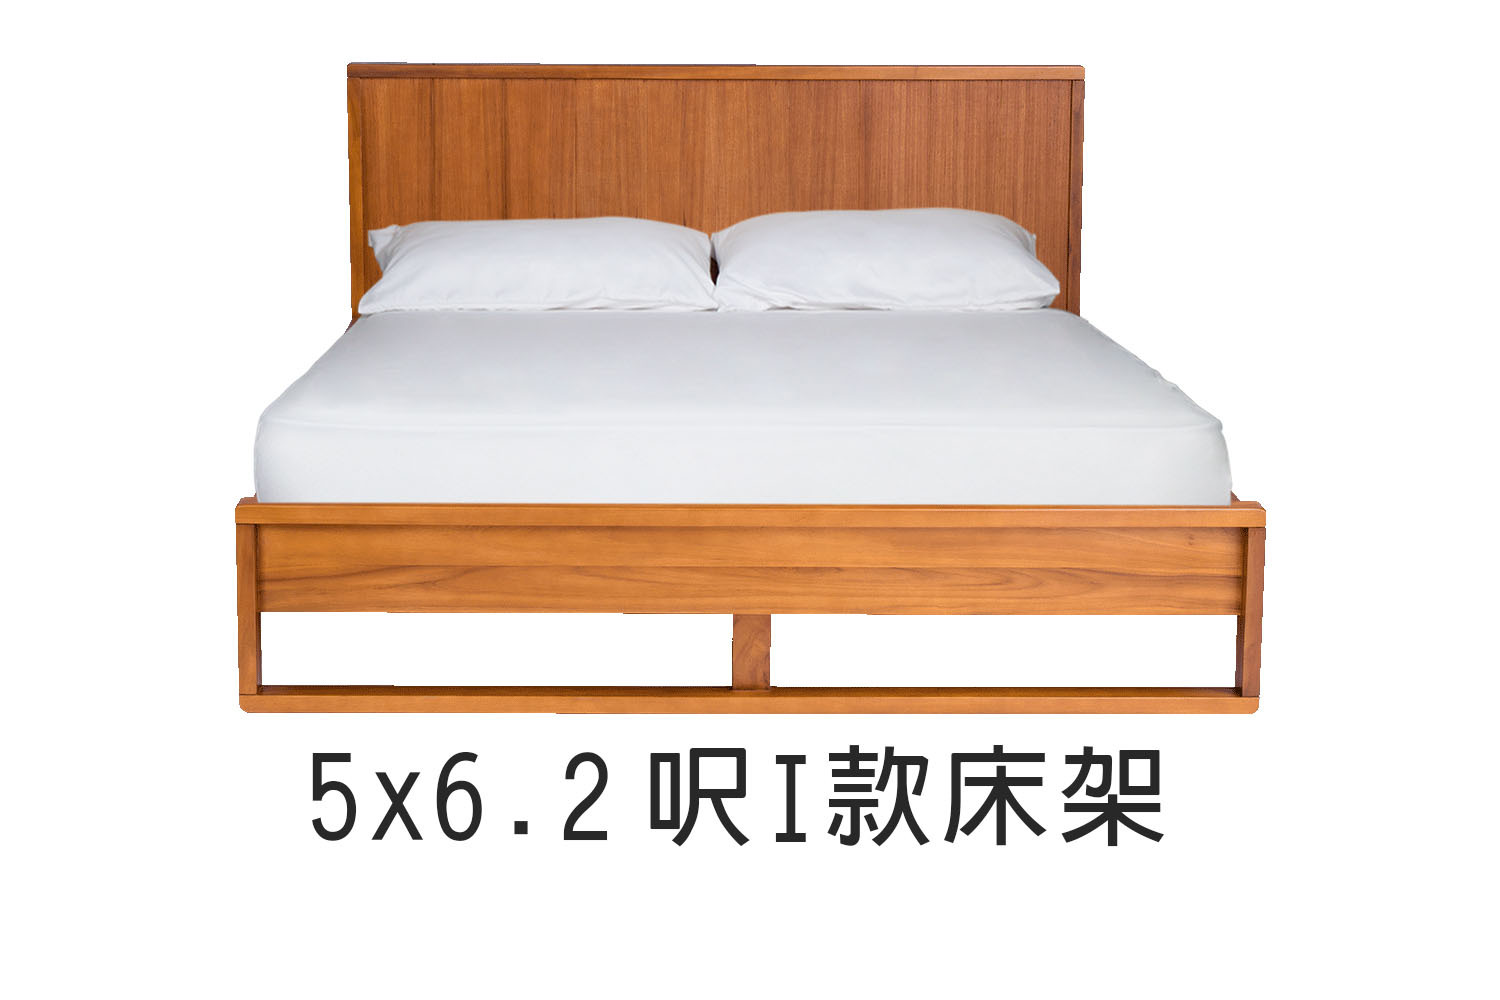 北歐風5x6.2呎I款雙人實木床架 WMBS42T1